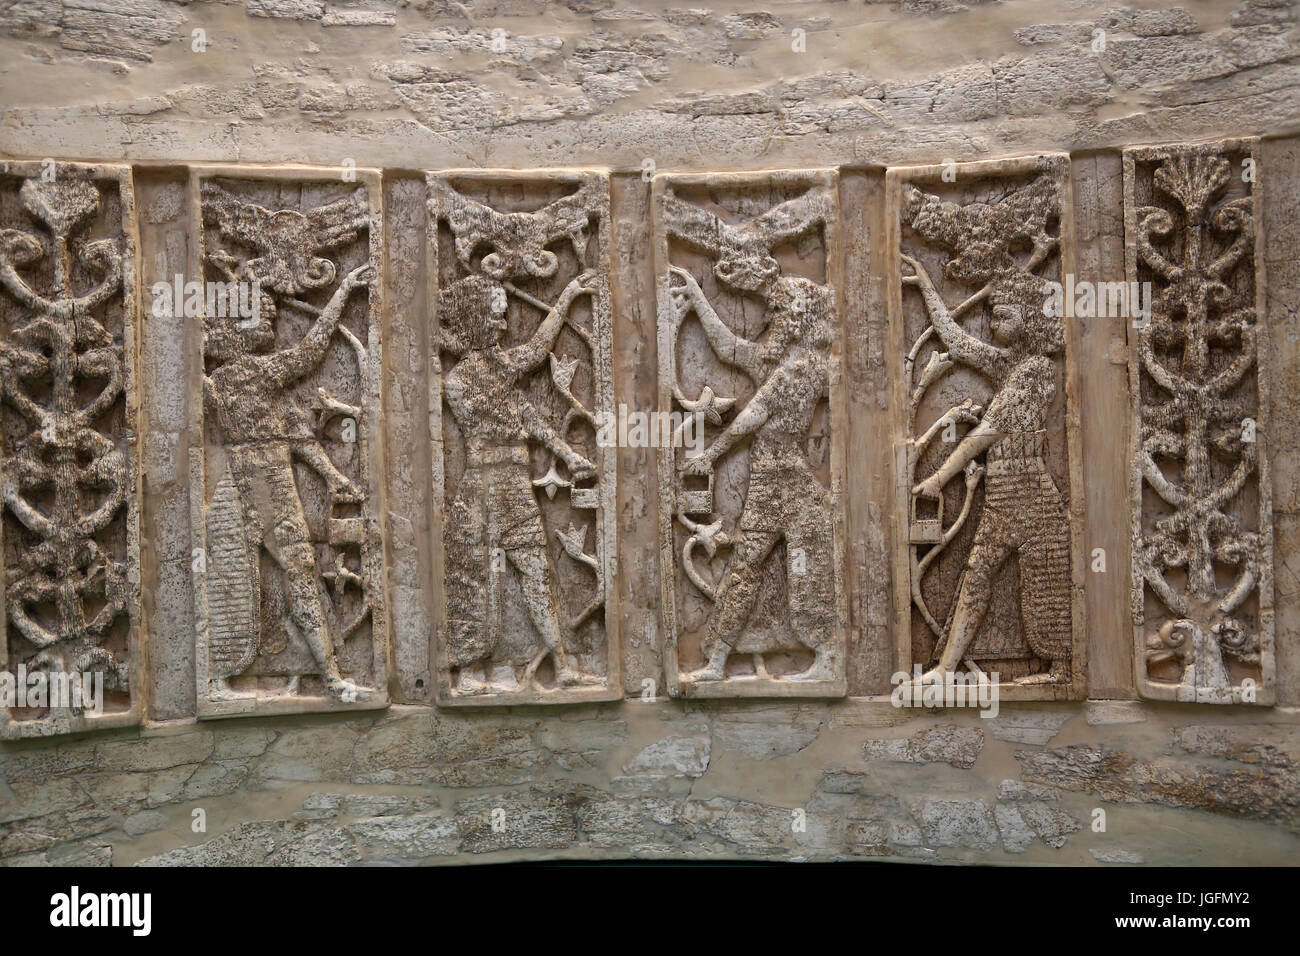 Elfenbein Rückenlehne aus Nimrud, Irak. Phoecian. 8. Jahrhundert. 6 Paneele. Krieger und Plam Bäume. British Museum. London, UK Stockfoto